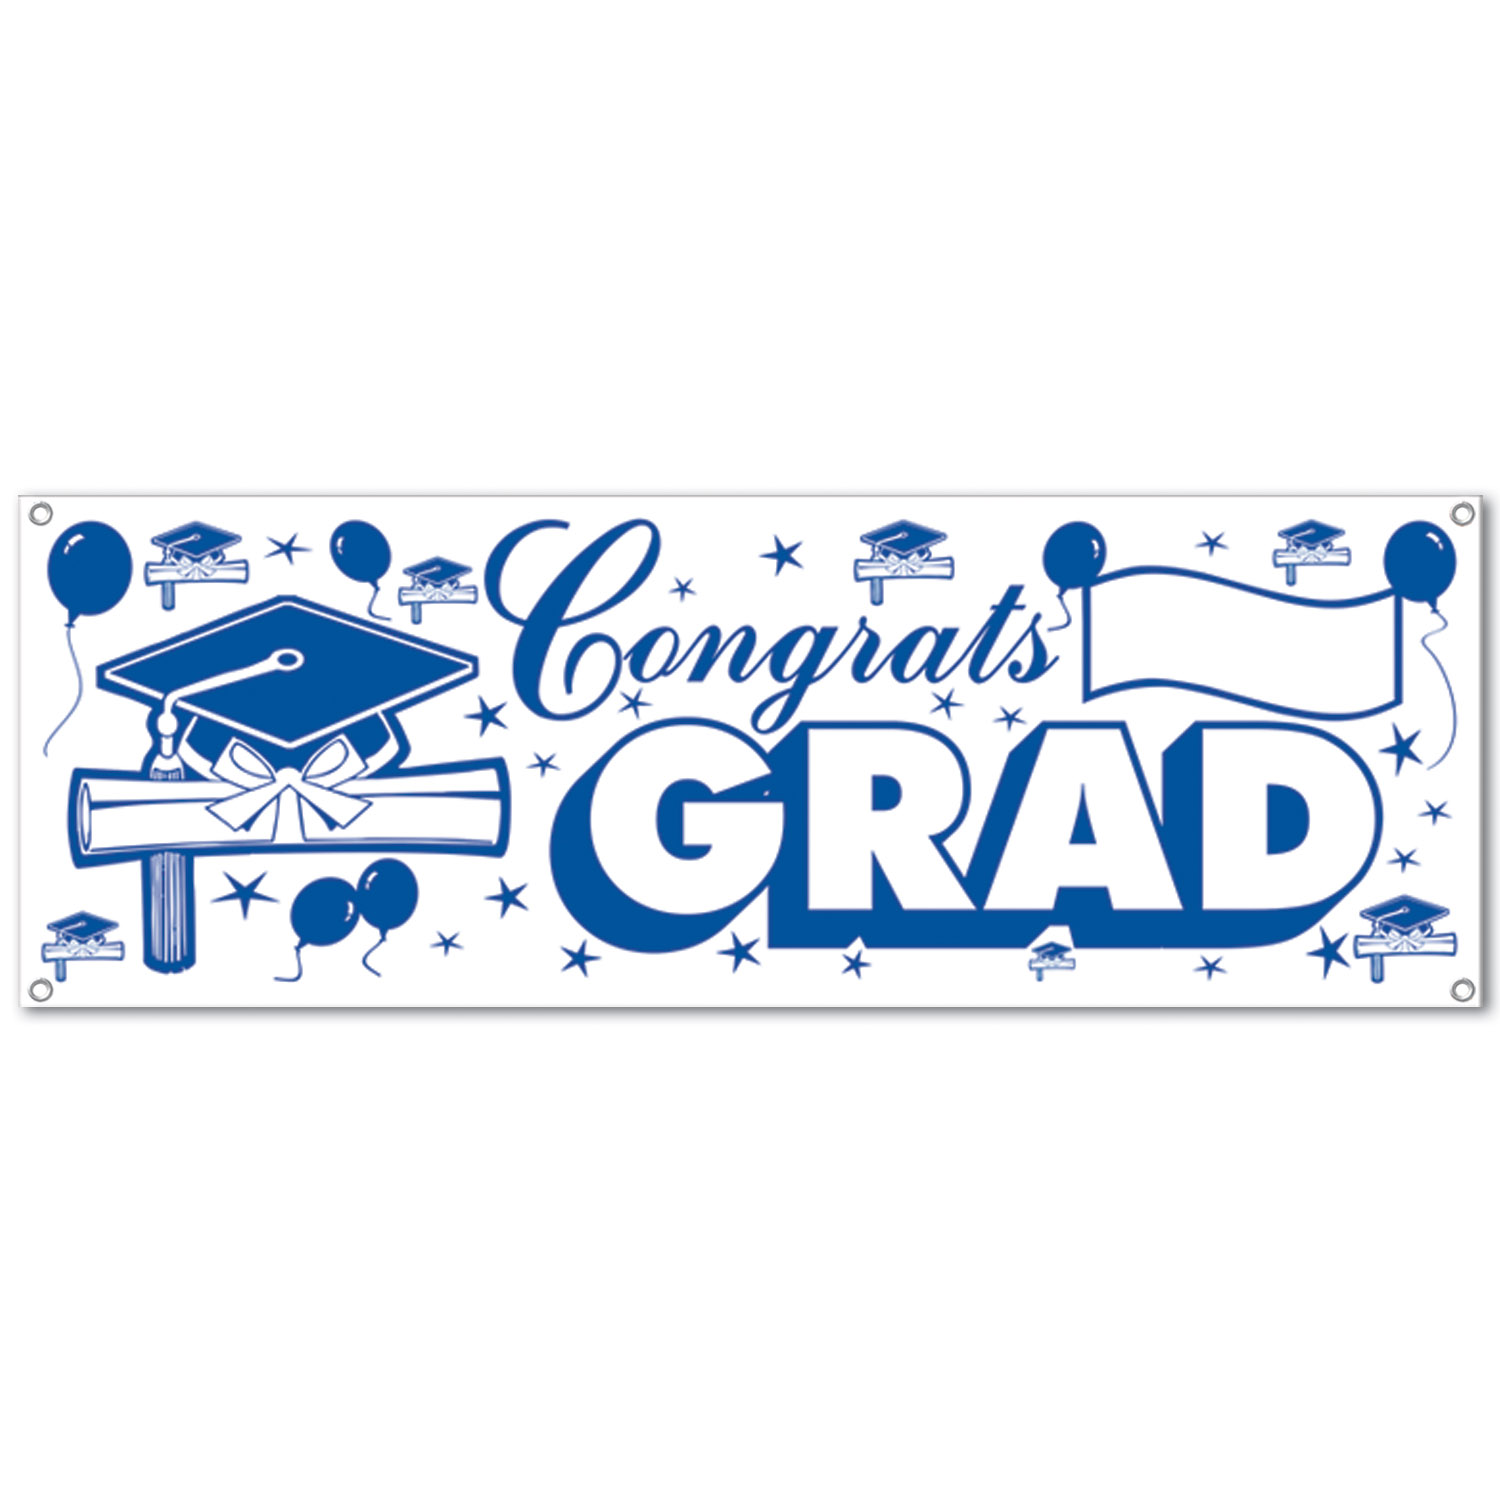 Congrats Grad SIGN Banner